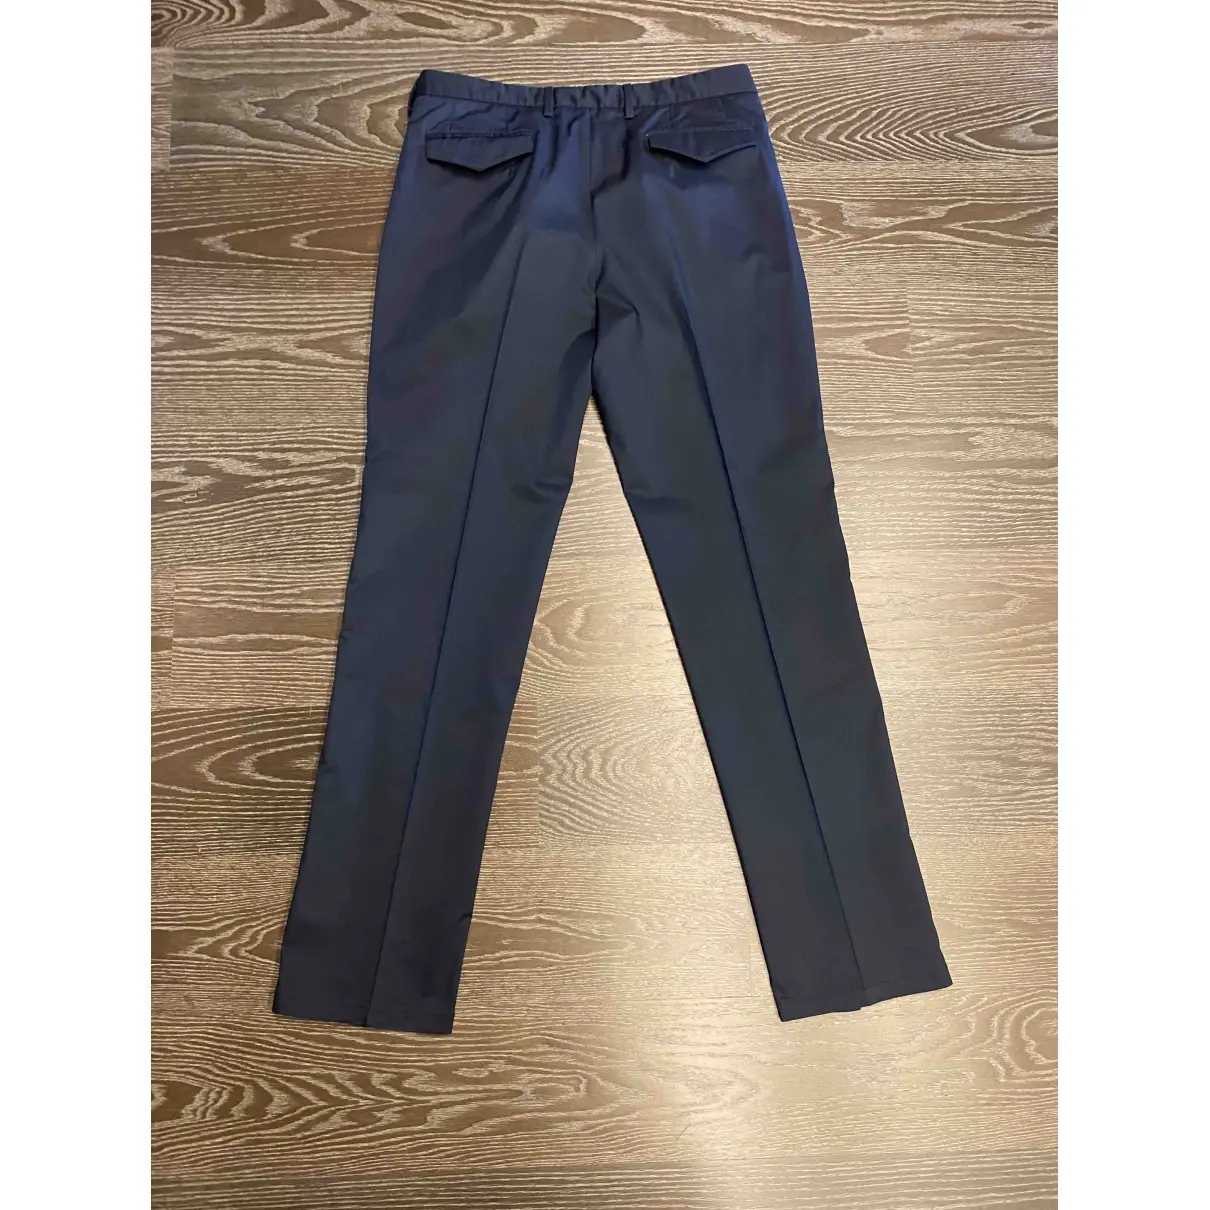 Emporio Armani Trousers for sale